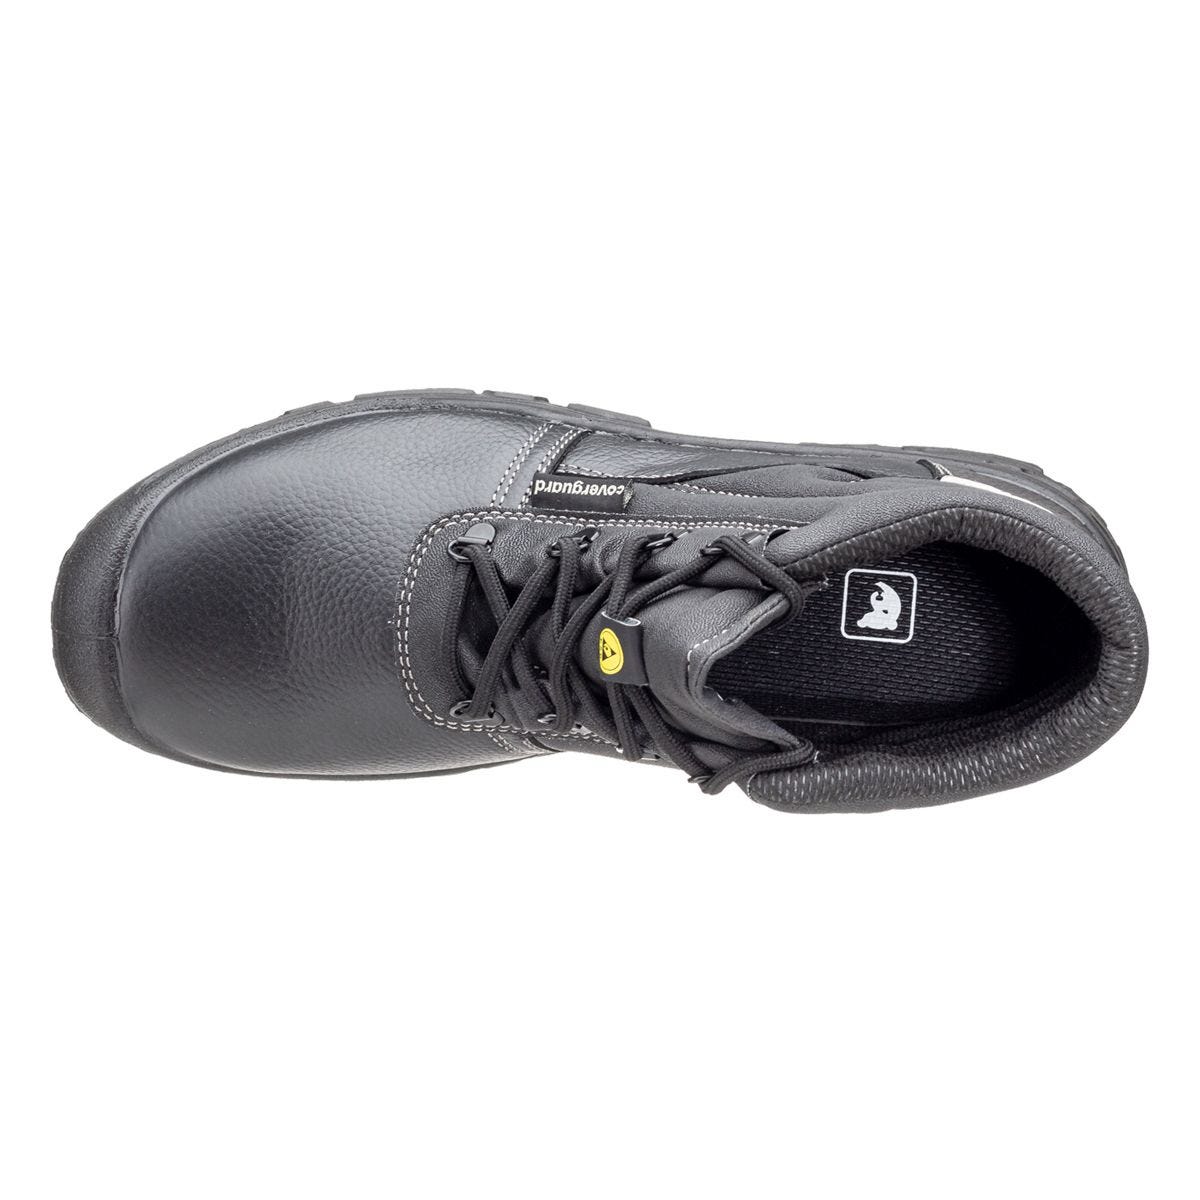 Chaussures de sécurité hautes Azurite II S3 ESD noir - Coverguard - Taille 39 3